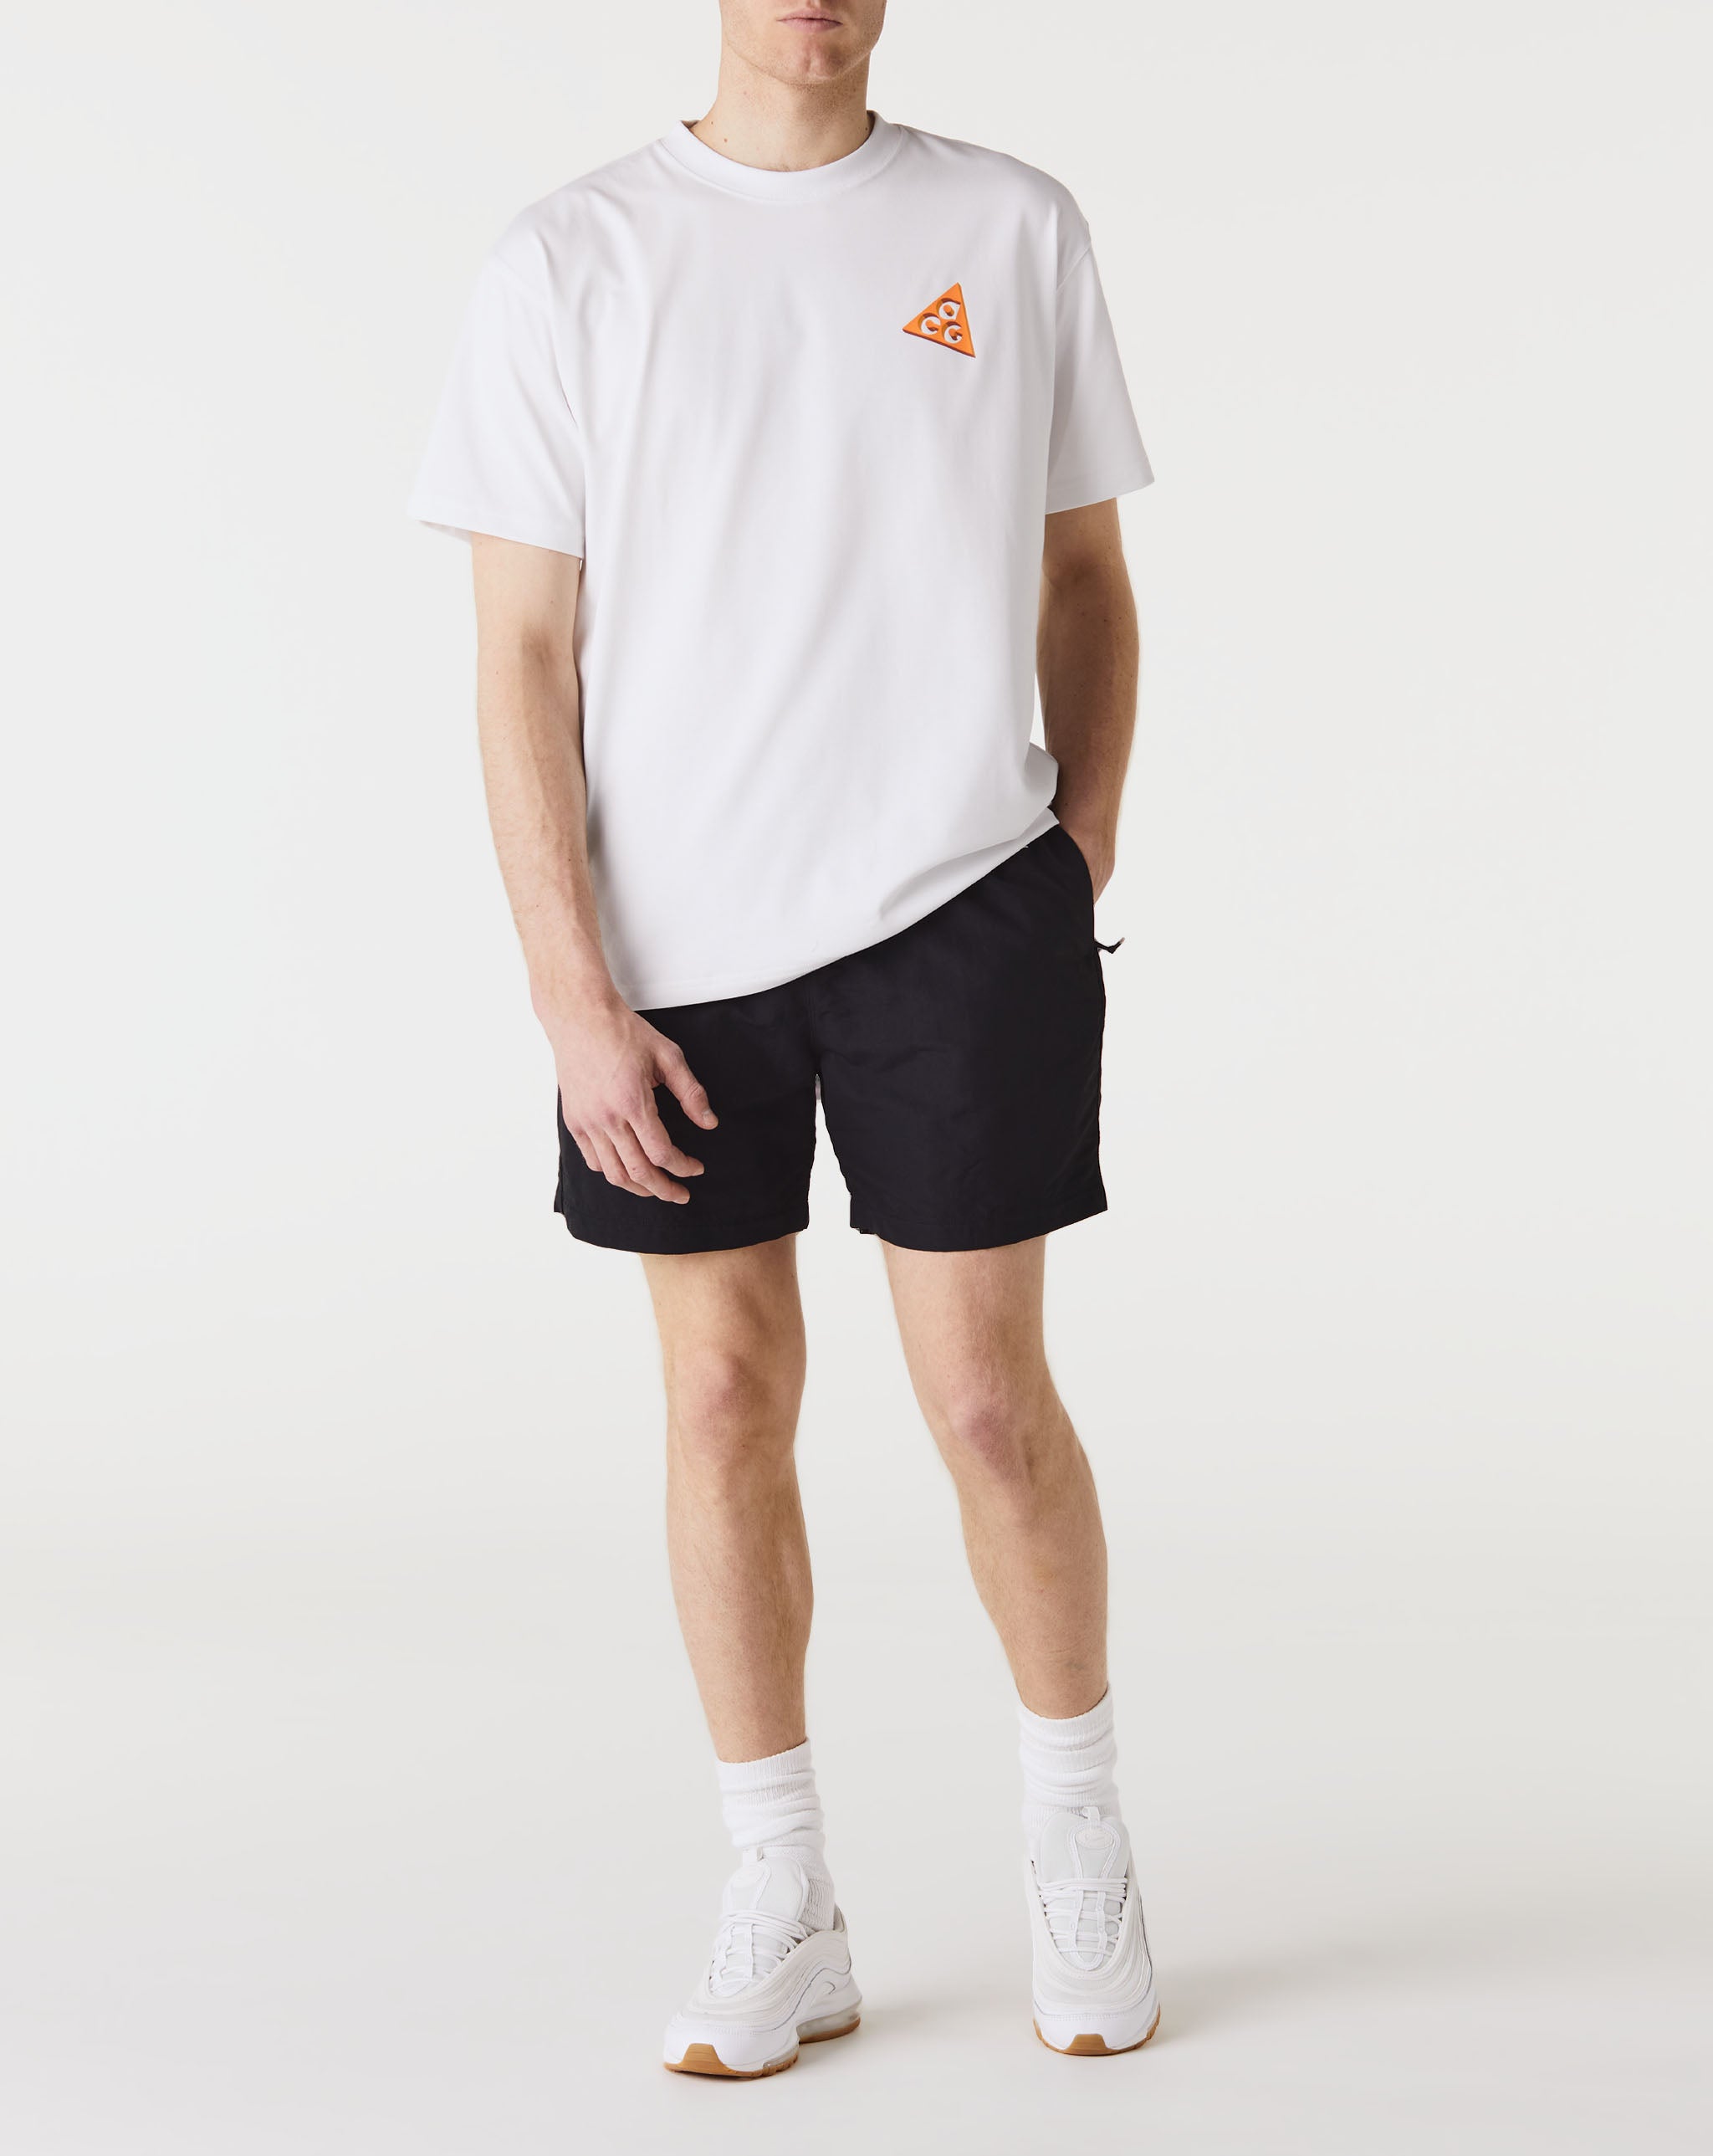 Nike ACG T-Shirt  - Cheap Urlfreeze Jordan outlet